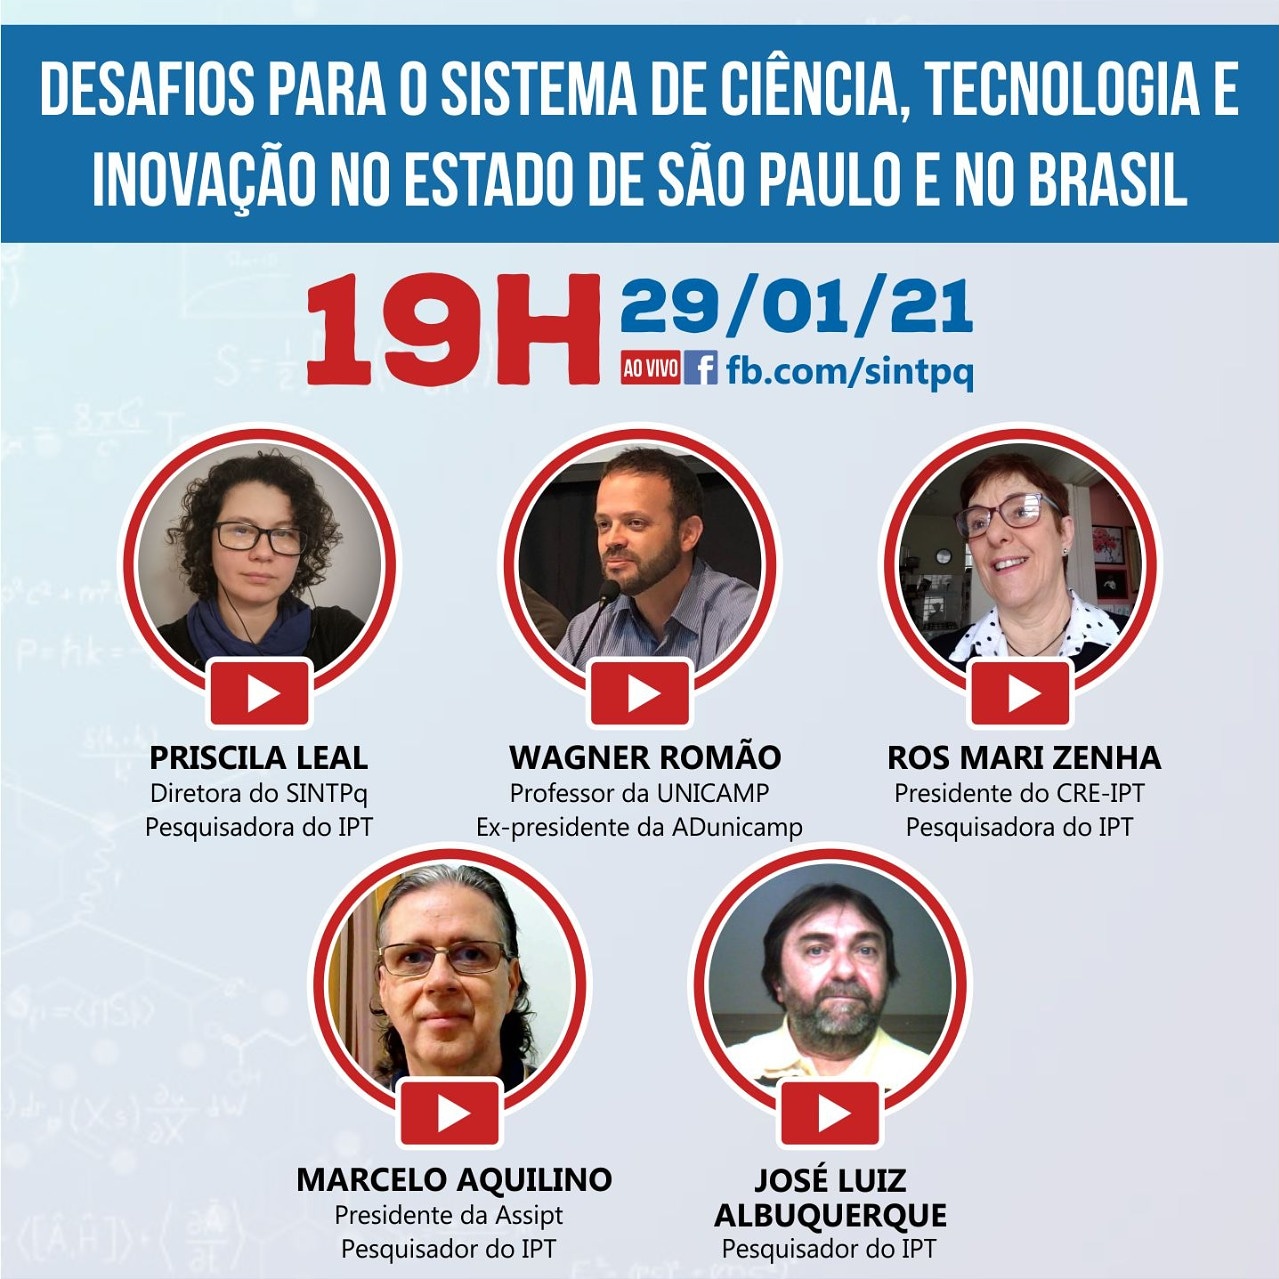 LIVE: Desafios para o sistema de ciência, tecnologia e inovação no Estado de São Paulo e no Brasil